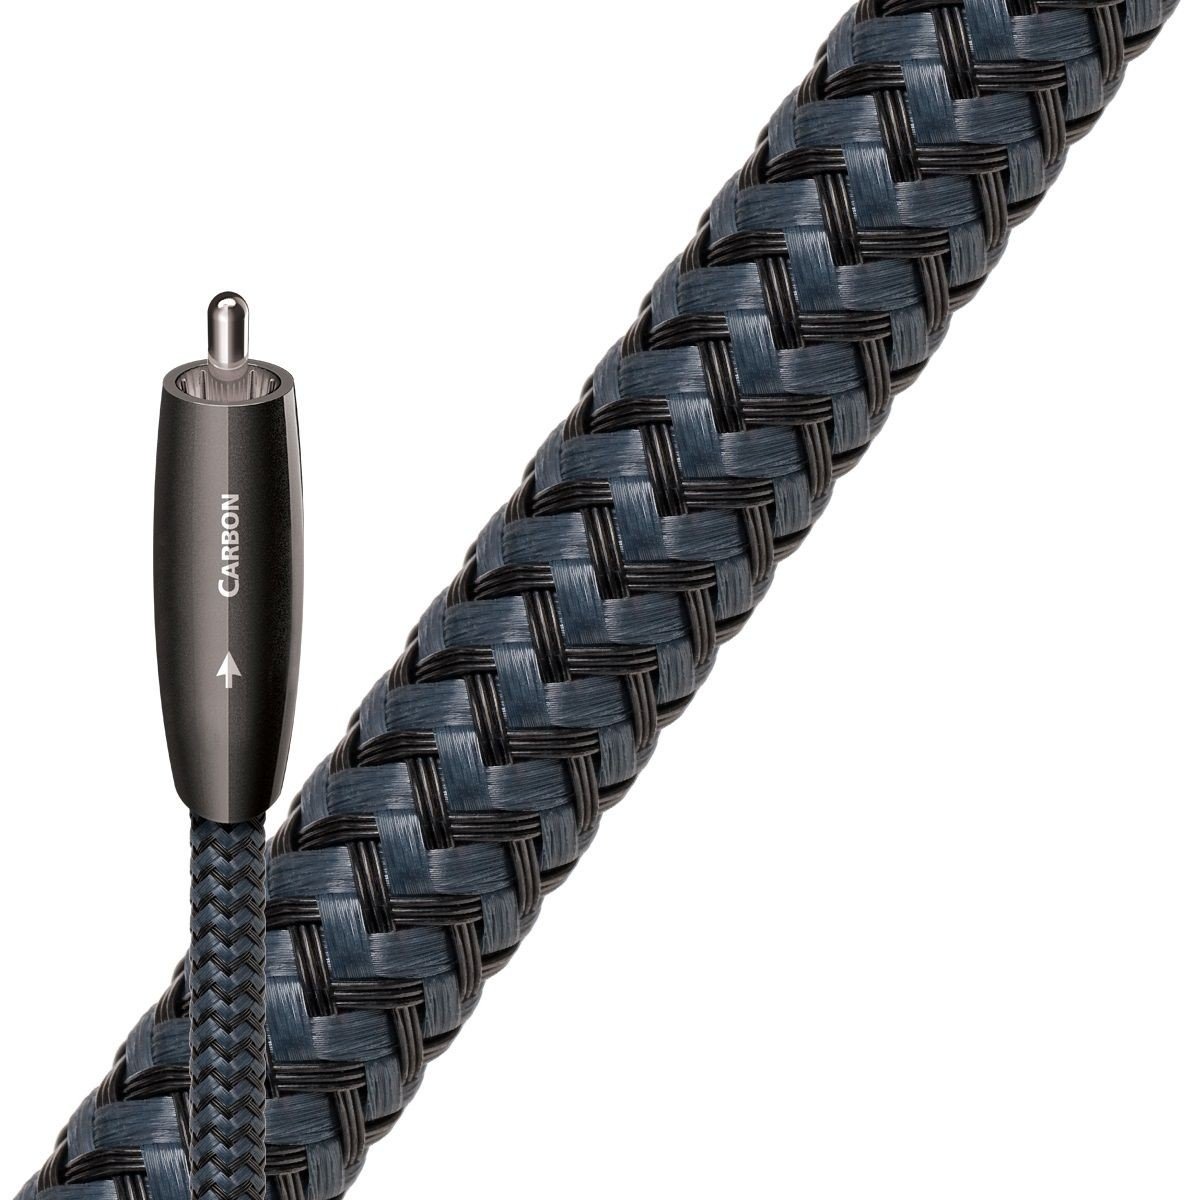 Cabluri coaxiale - Cablu digital coaxial AudioQuest Carbon 0.75 m, audioclub.ro